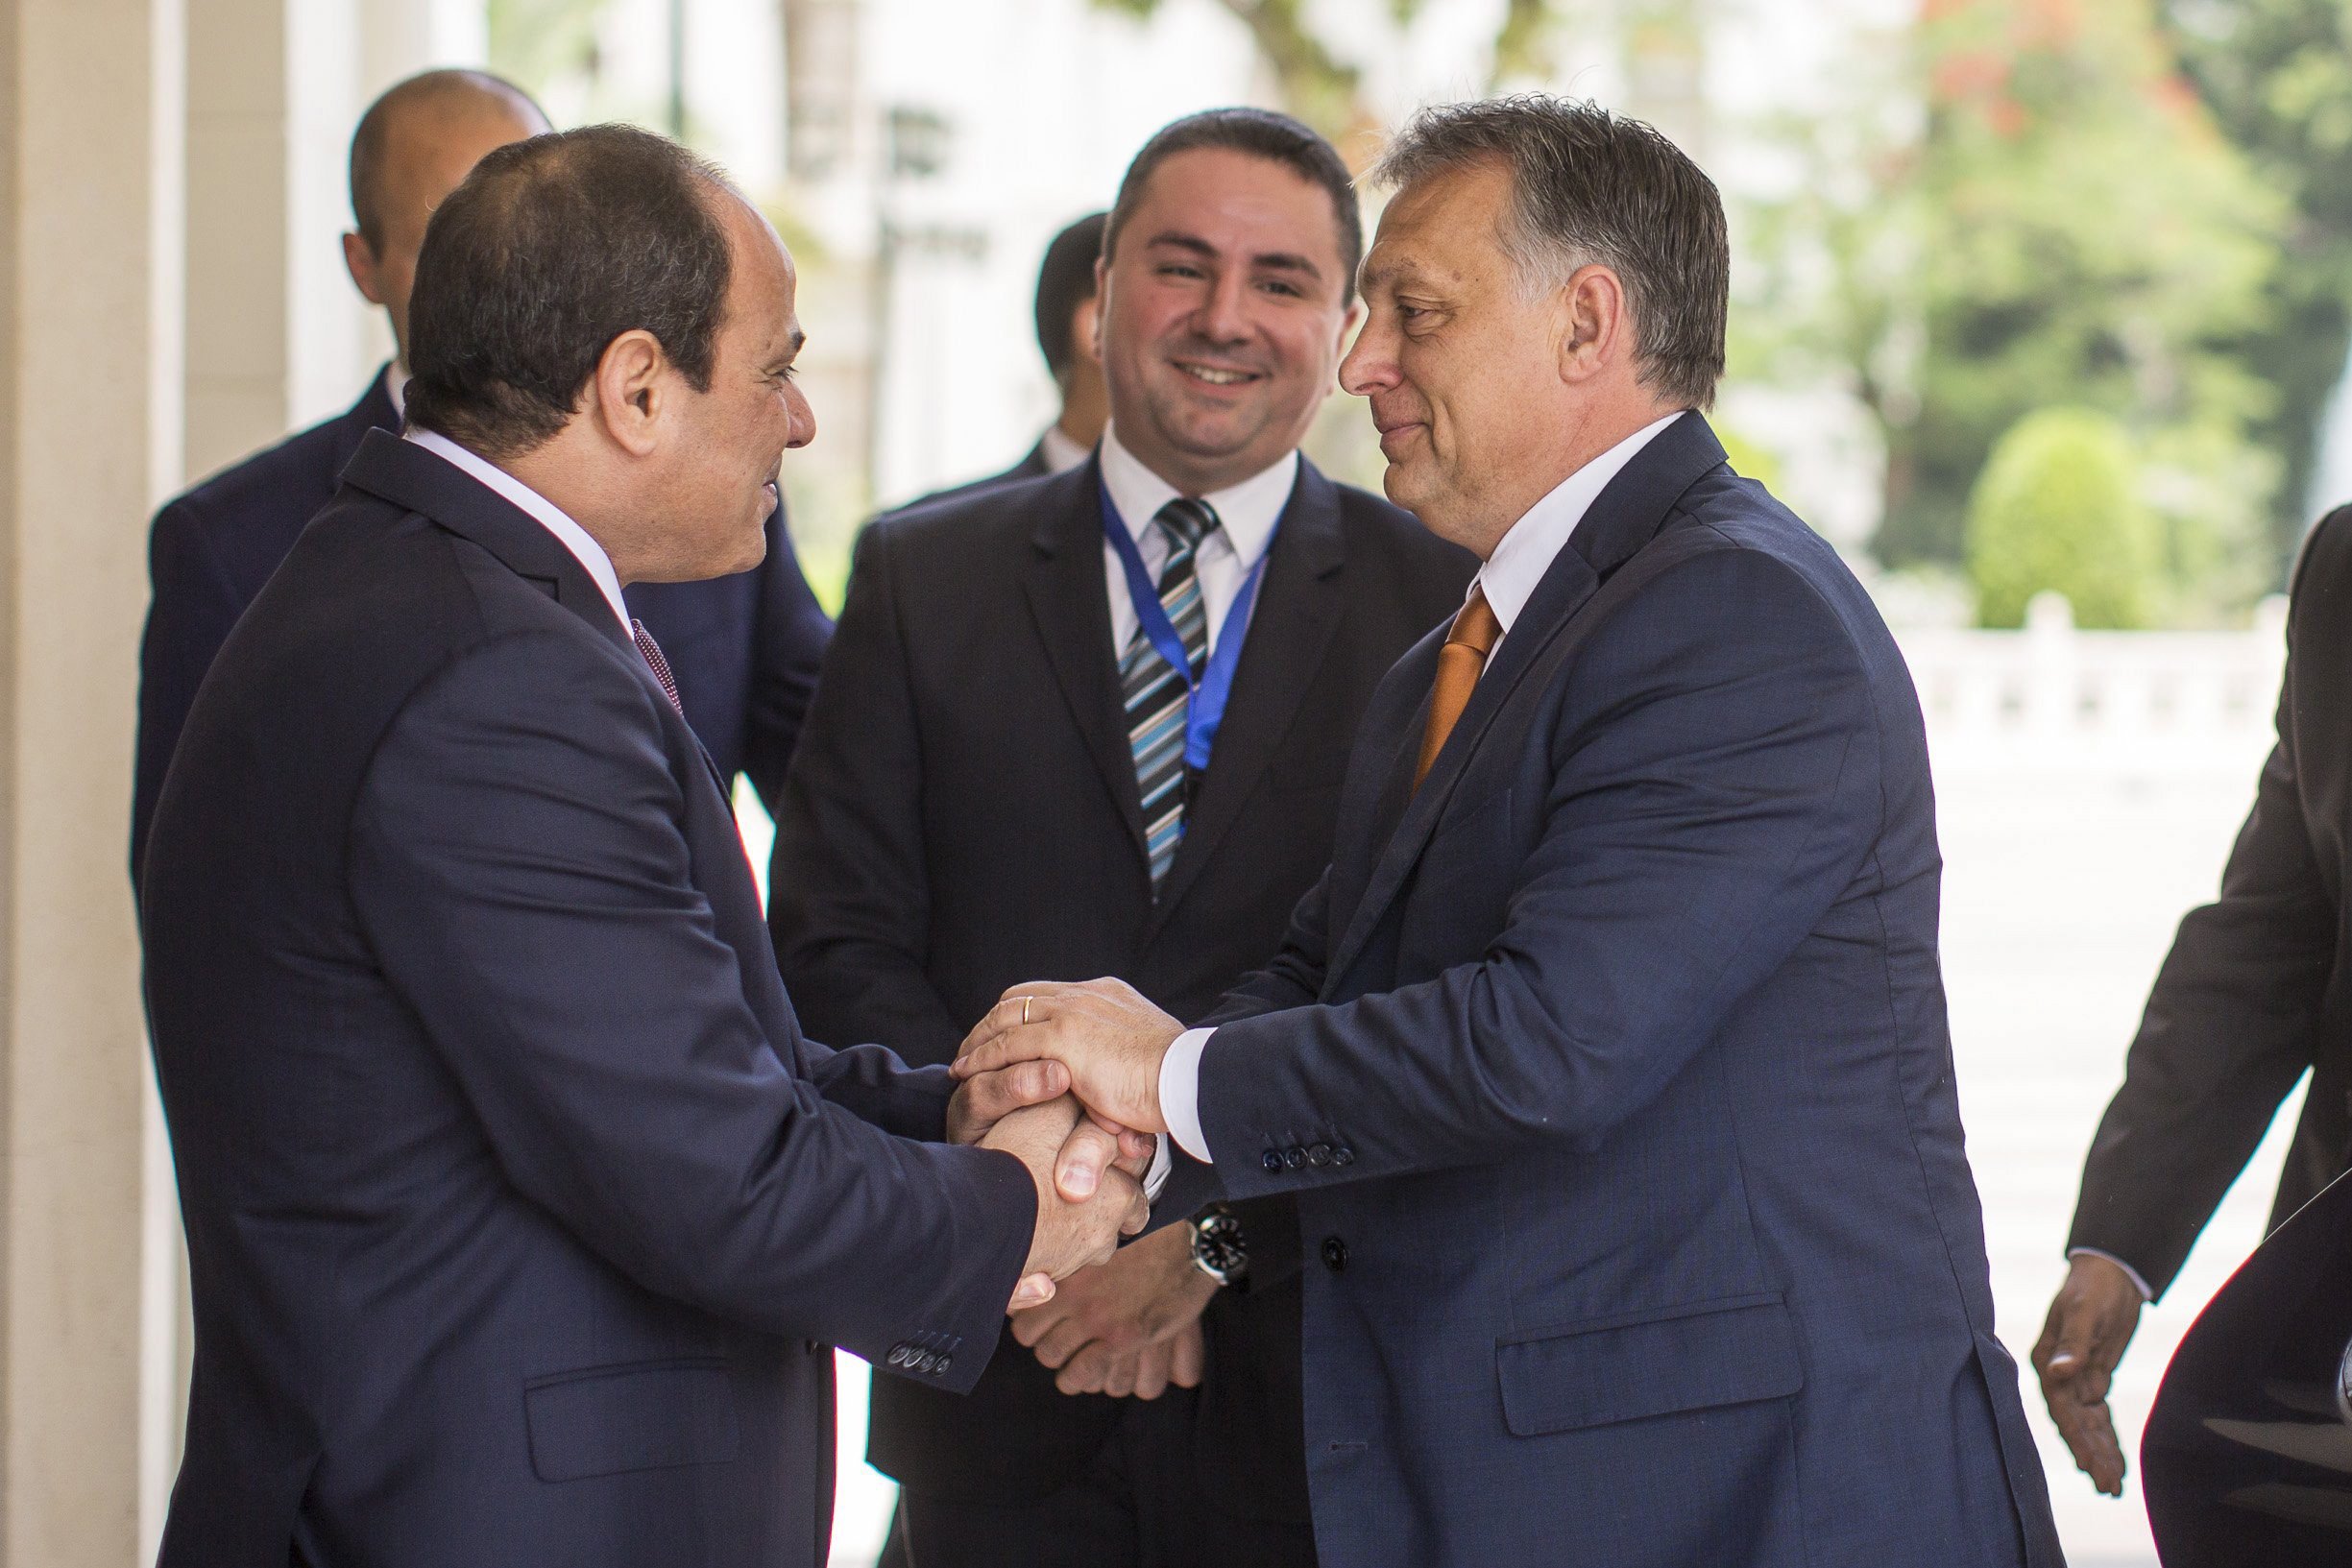 Áderrel és Orbánnal is találkozik az egyiptomi elnök Budapesten